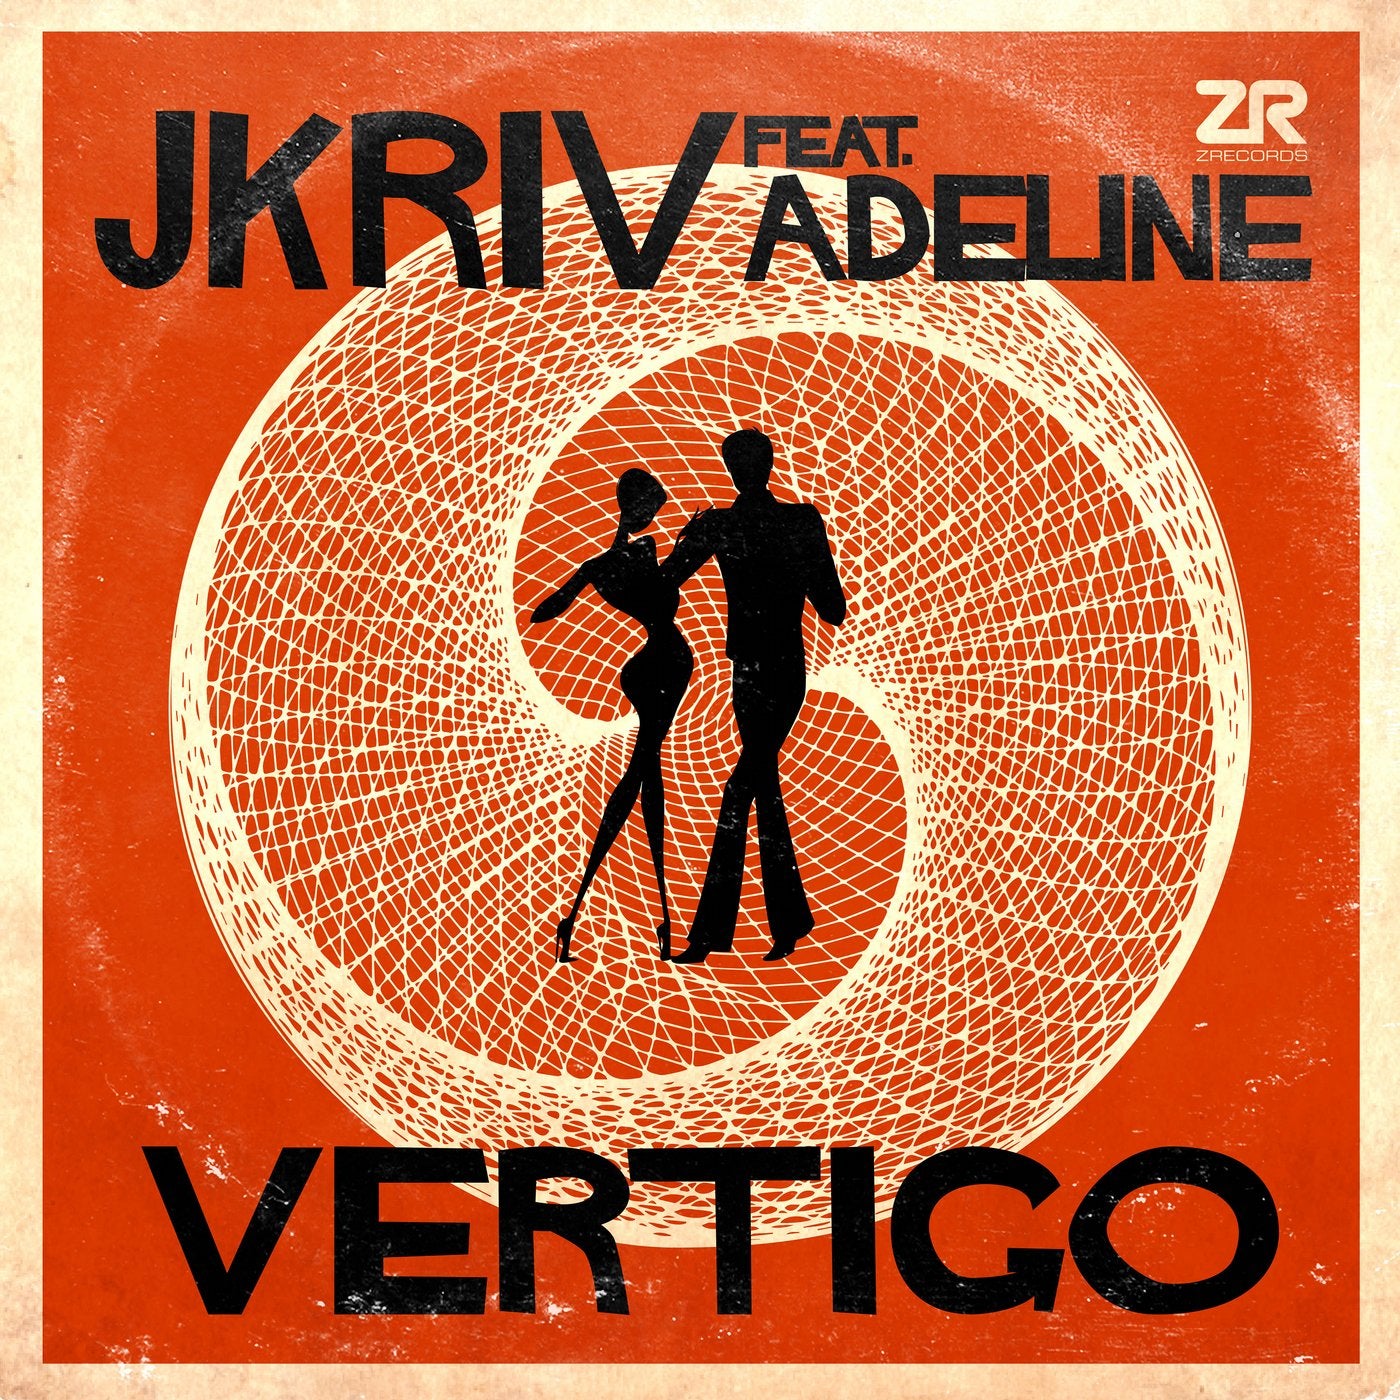 Dick night. Vertigo. Vertigo Music. Vertigo альбом. Vertigo песня.